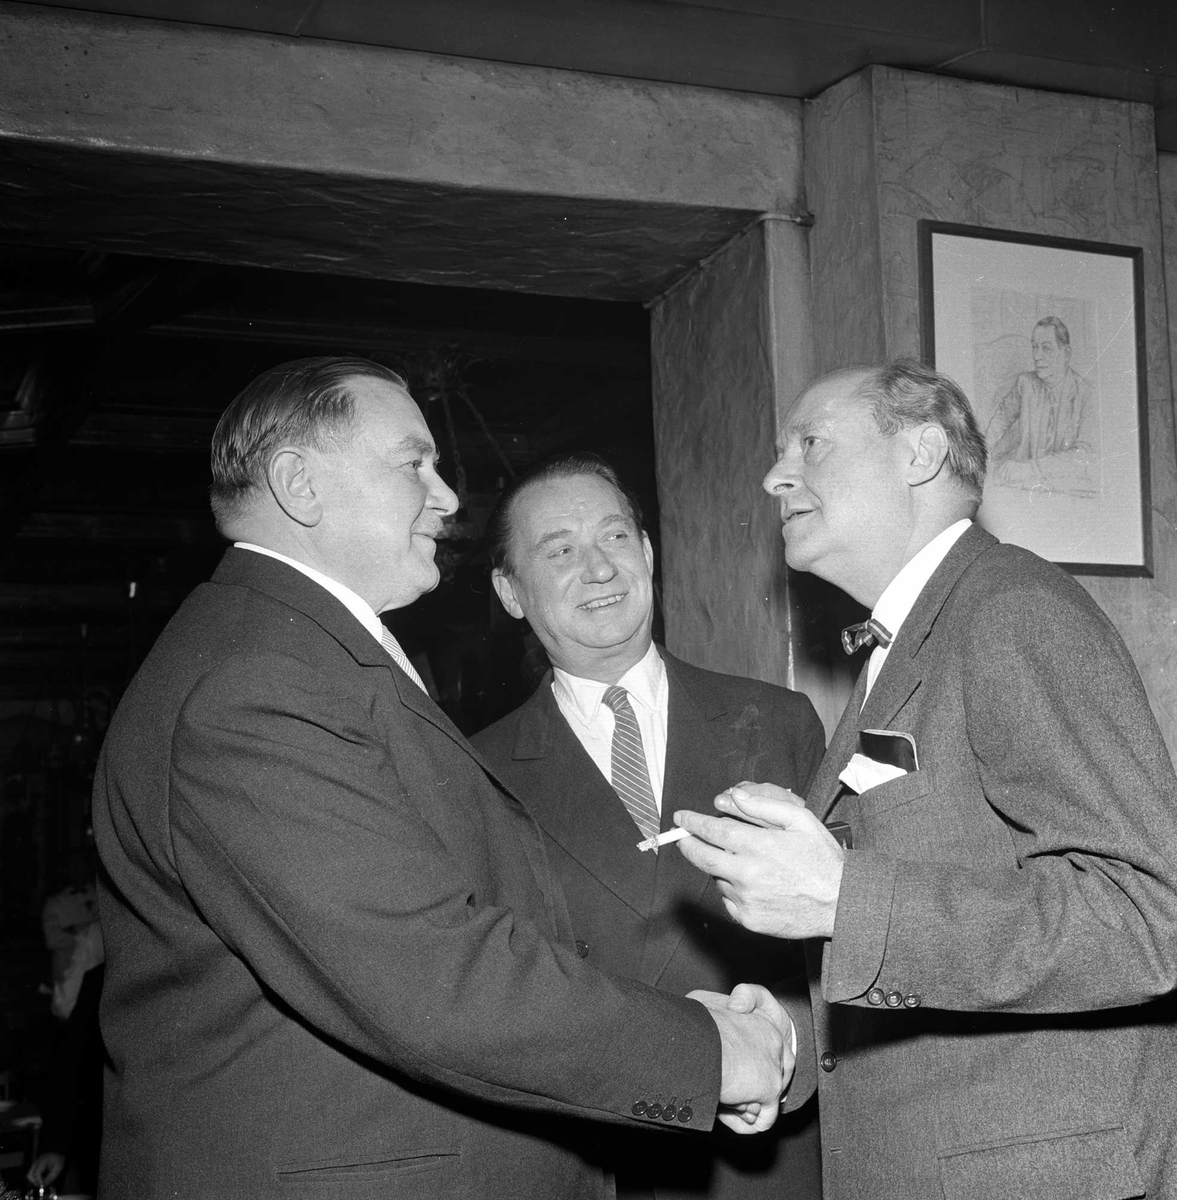 Restaurant Blom sitt jubileum i 1960. Tre menn i samtale, antakelig Sigfred Stephensen til venstre.